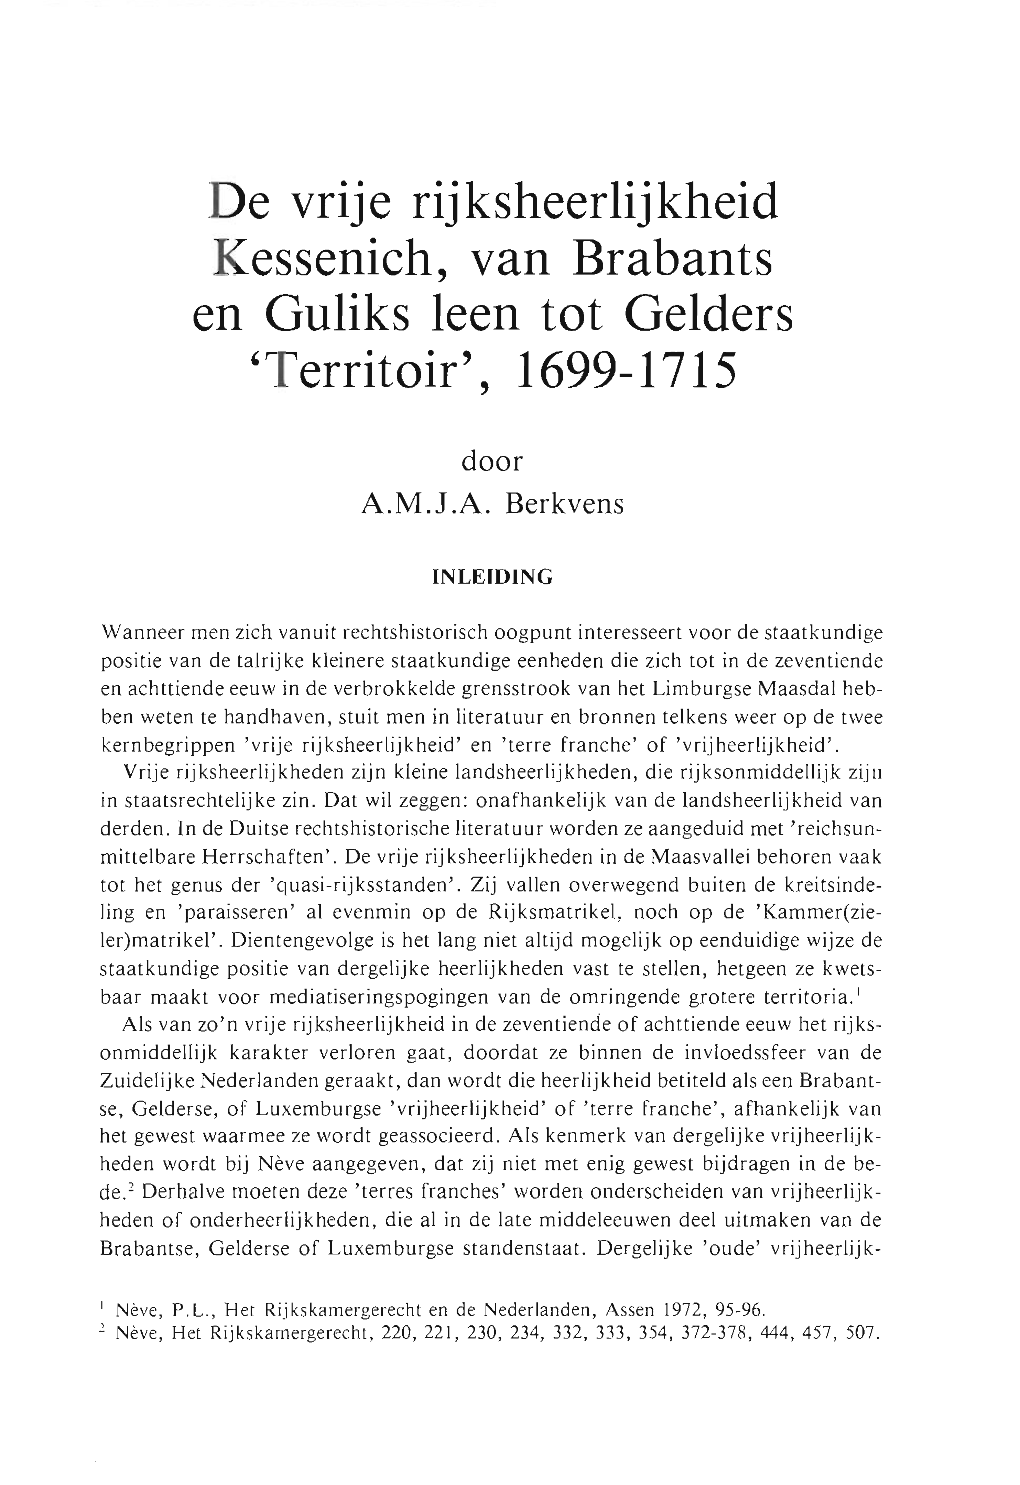 De Vrije Rijksheerlijkheid Kessenich, Van Brabants En Guliks Leen Tot Gelders 'Territoir', 1699-1715